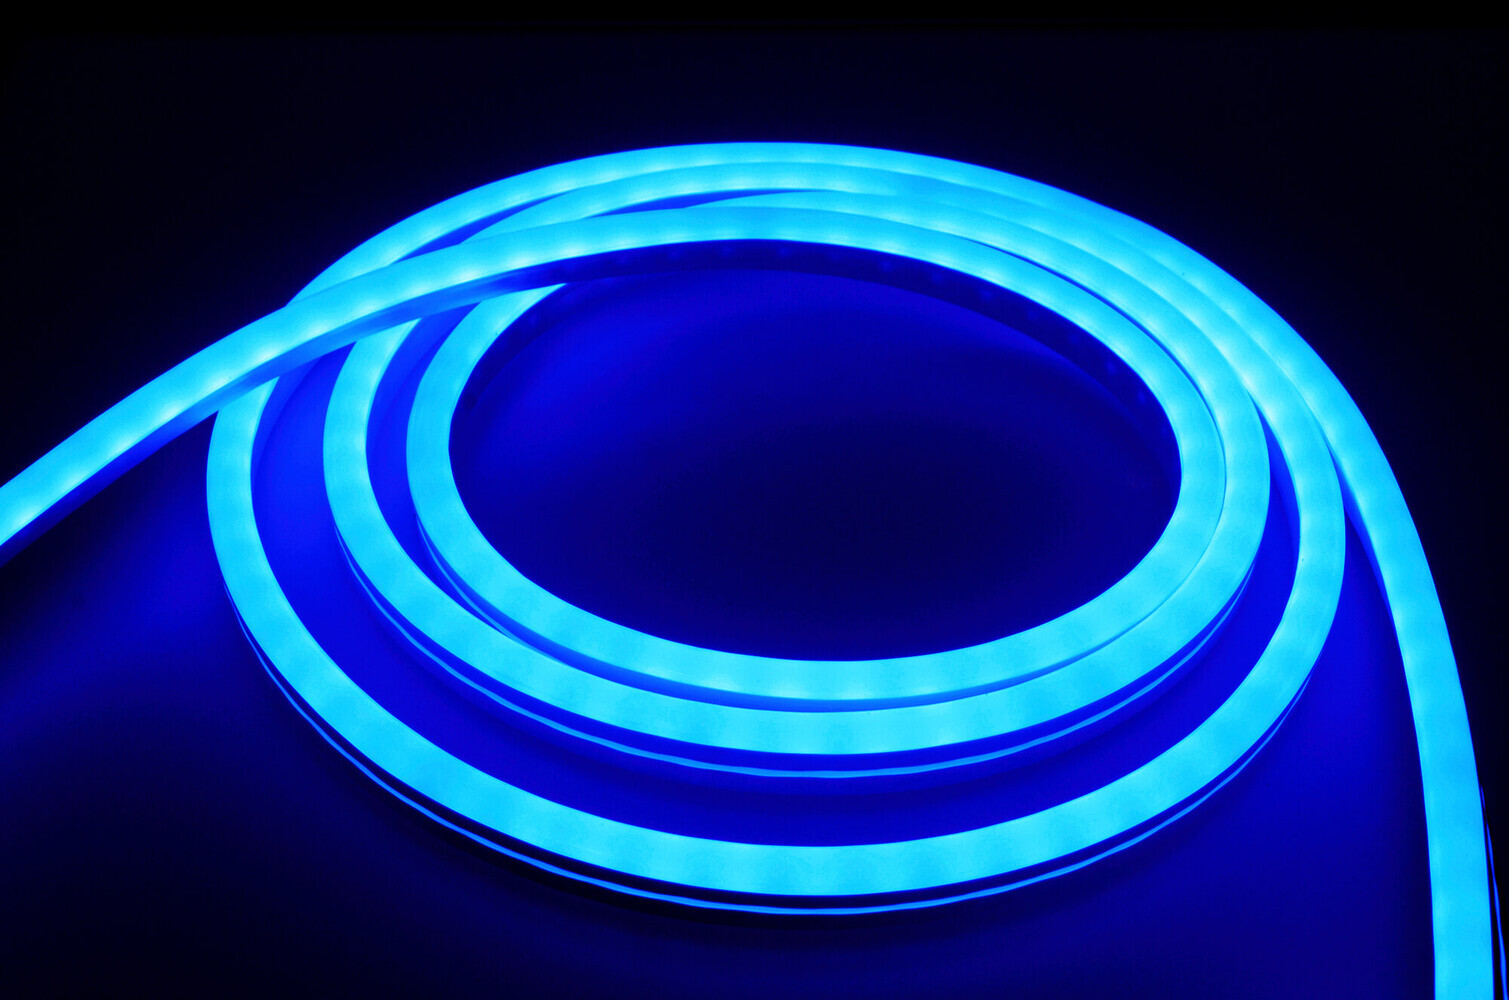 Hochwertiger, farbenfroher LED Streifen von LED Universum